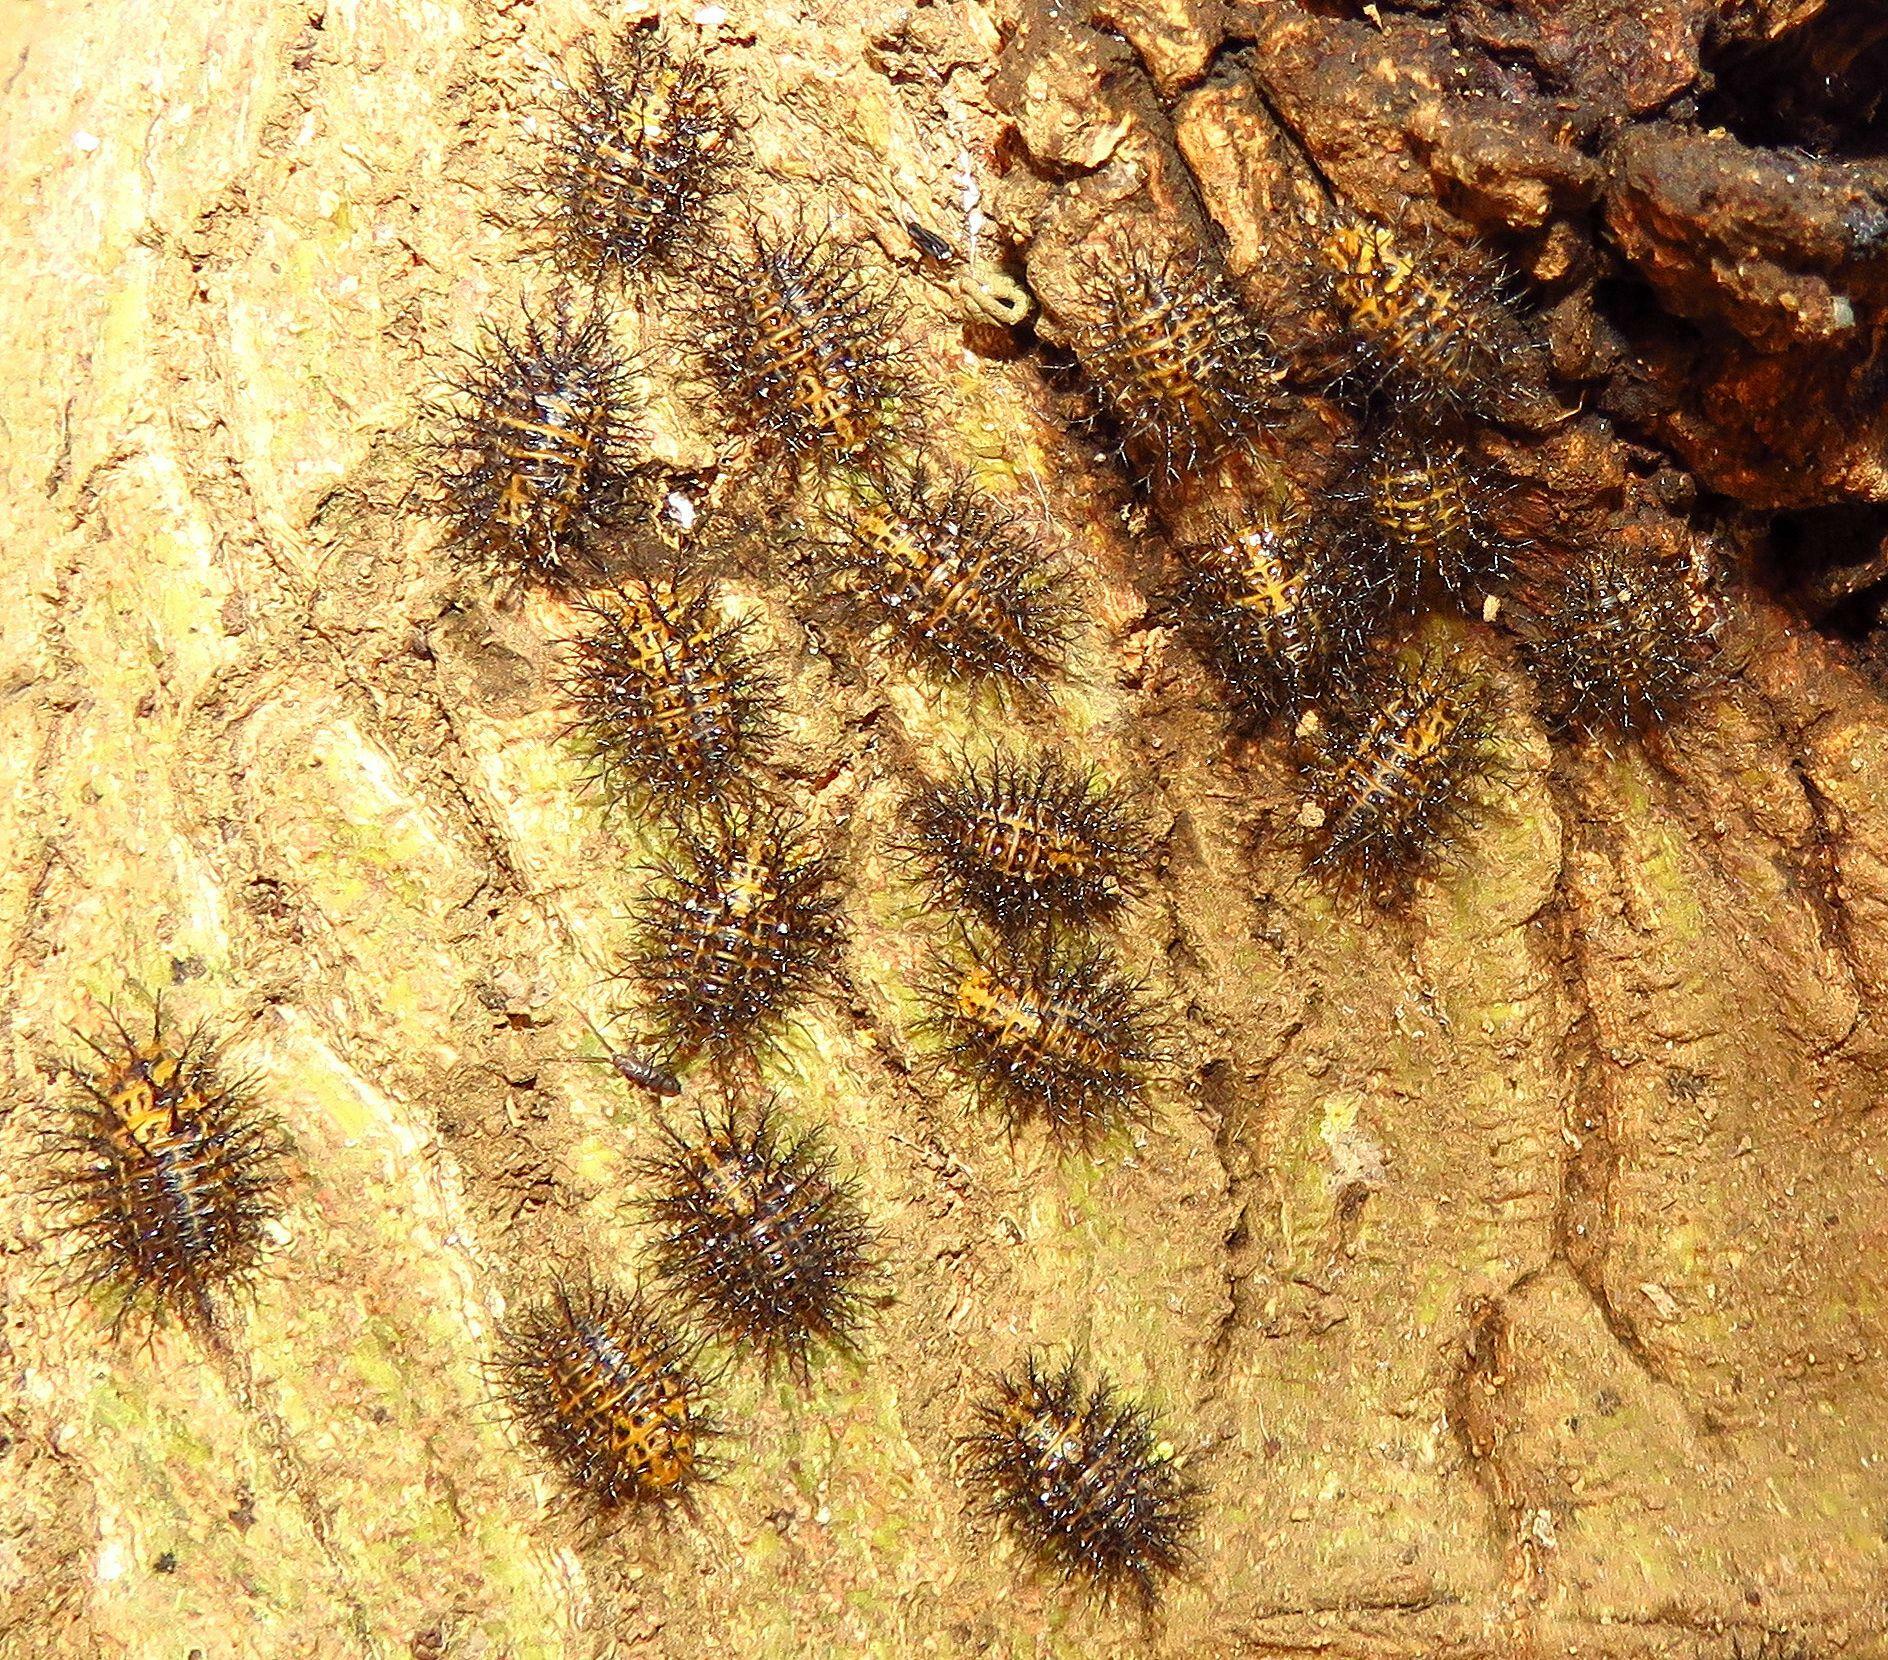 木の幹で集団越冬するトホシテントウ幼虫。針山地獄のようだ。